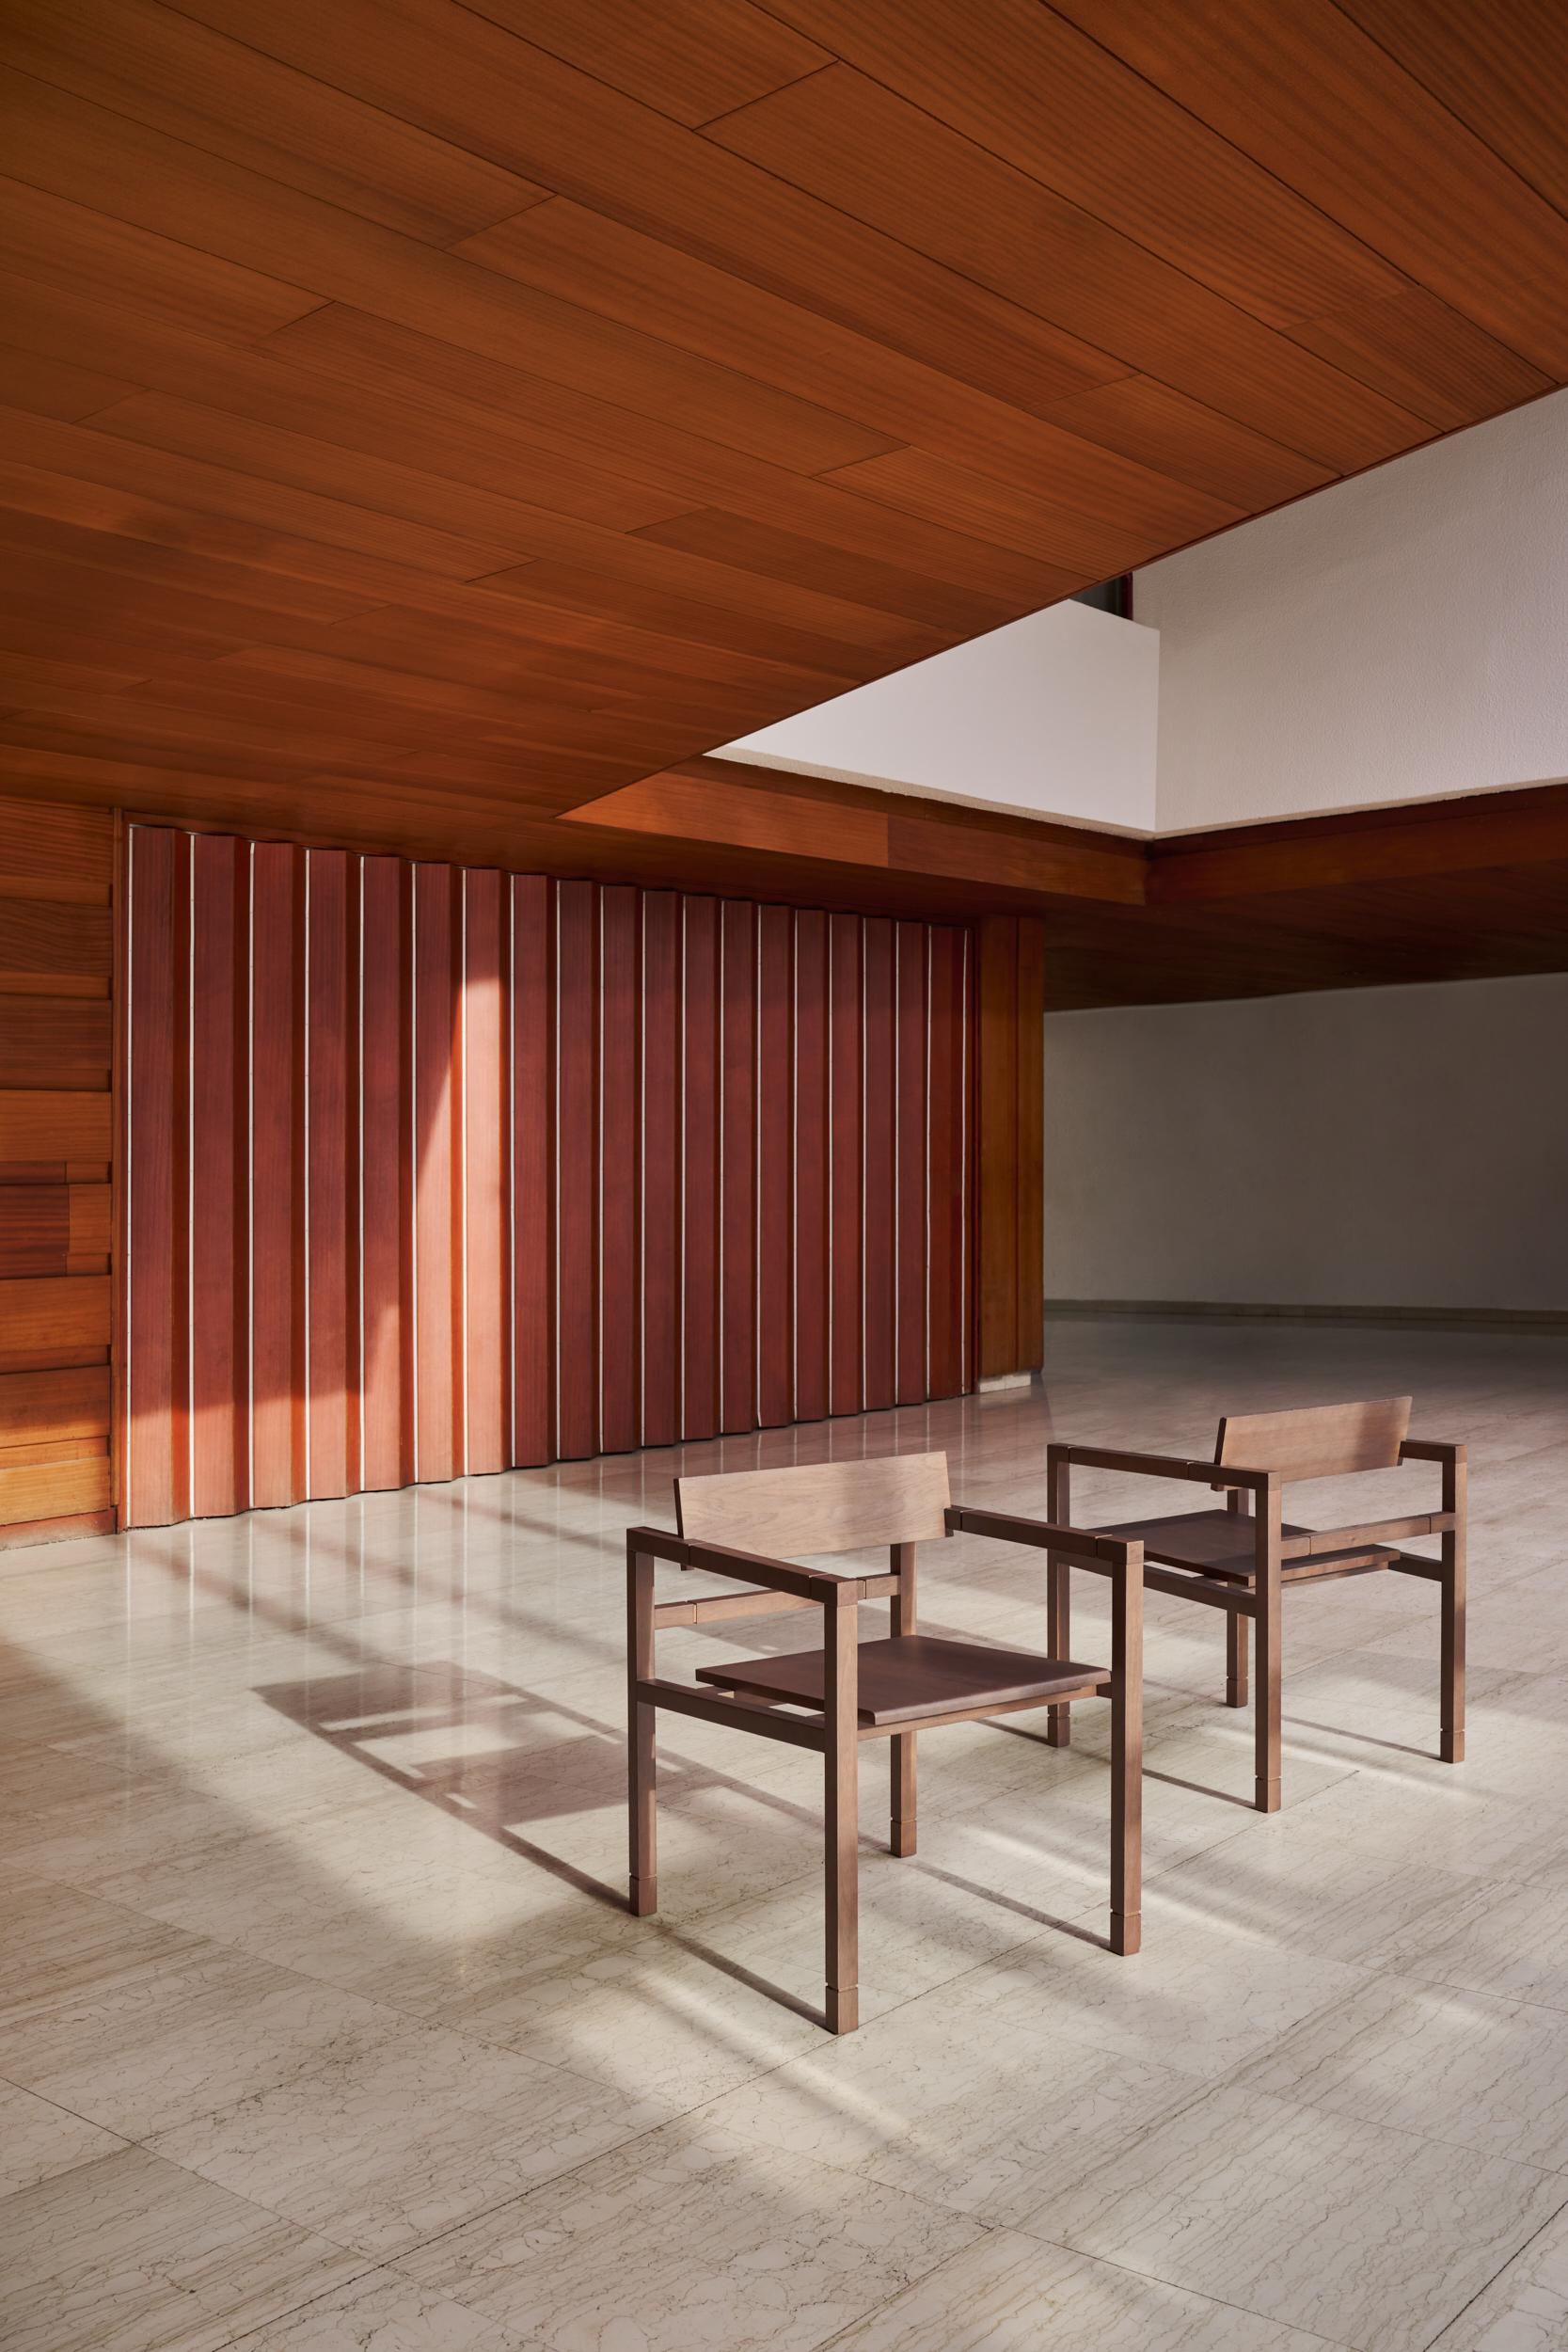 L'Elegance de la simplicité : La chaise moderne en bois de chêne avec accoudoirs

Dans un monde rempli de complexités, l'attrait de la simplicité n'a jamais été aussi fort. Dans l'esprit du design japonais minimaliste du 21e siècle, nous sommes